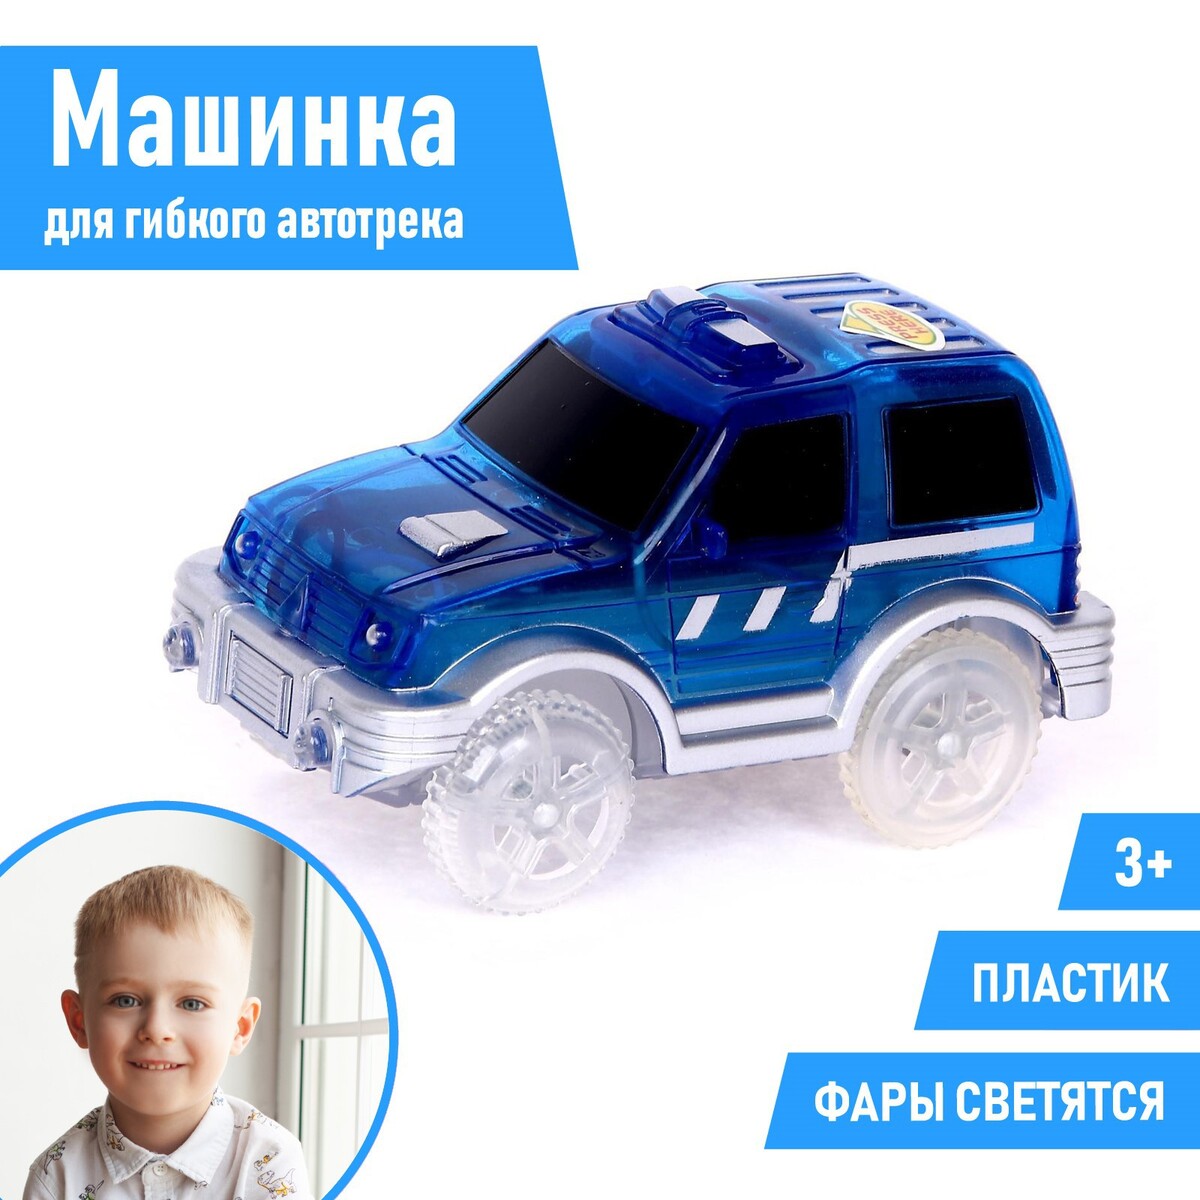 Машинка для гибкого автотрека magic tracks, цвет синий умка музыкальная машинка синий трактор